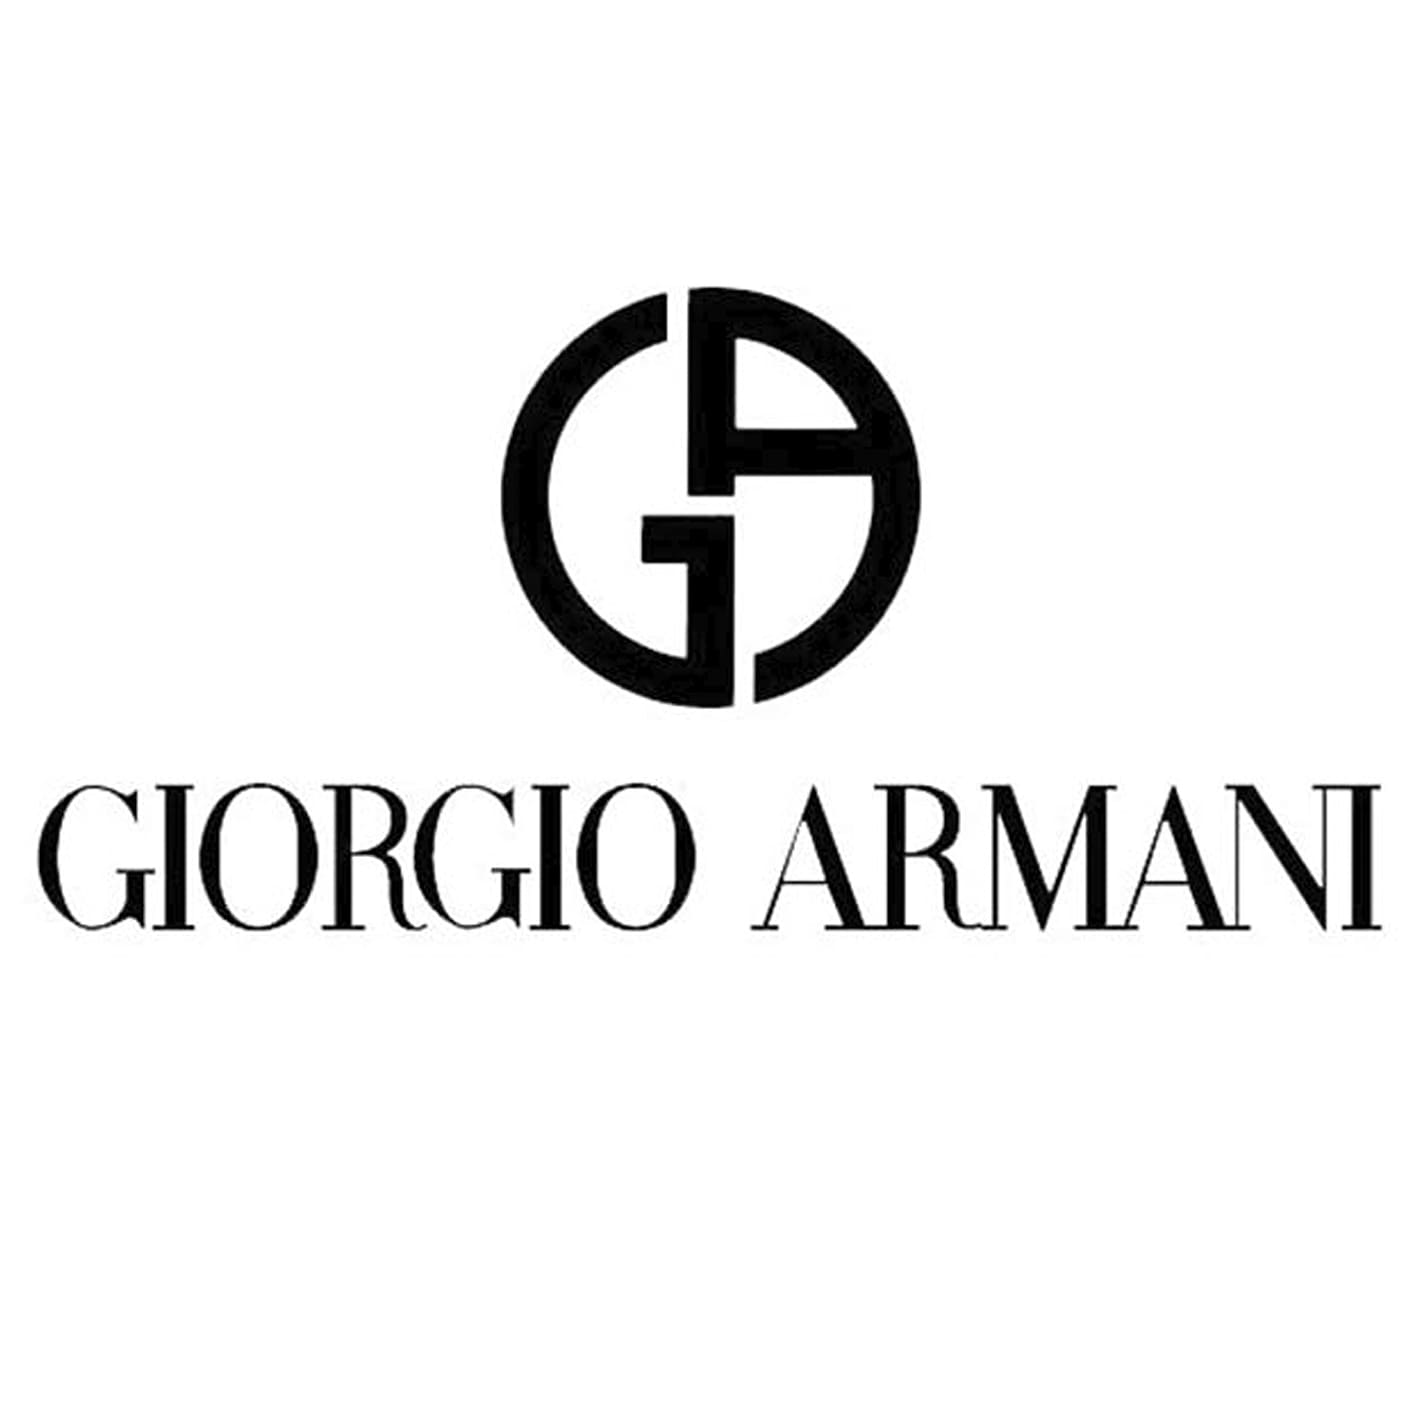 giorgio-armani-logo-45068